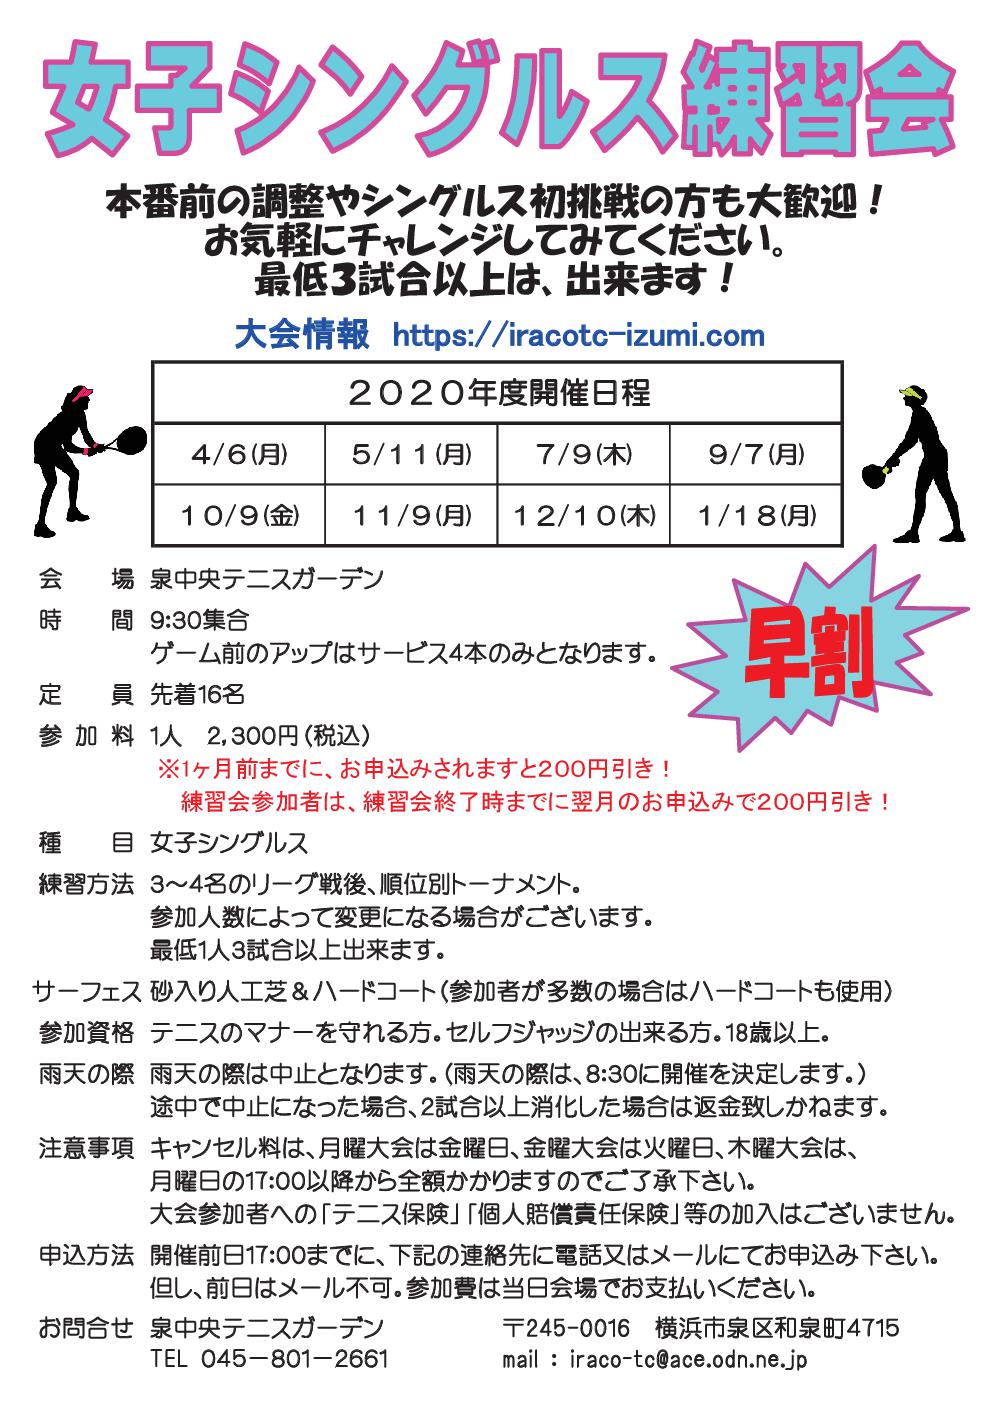 10 - &#x1f6ba;「女子シングルス練習会」